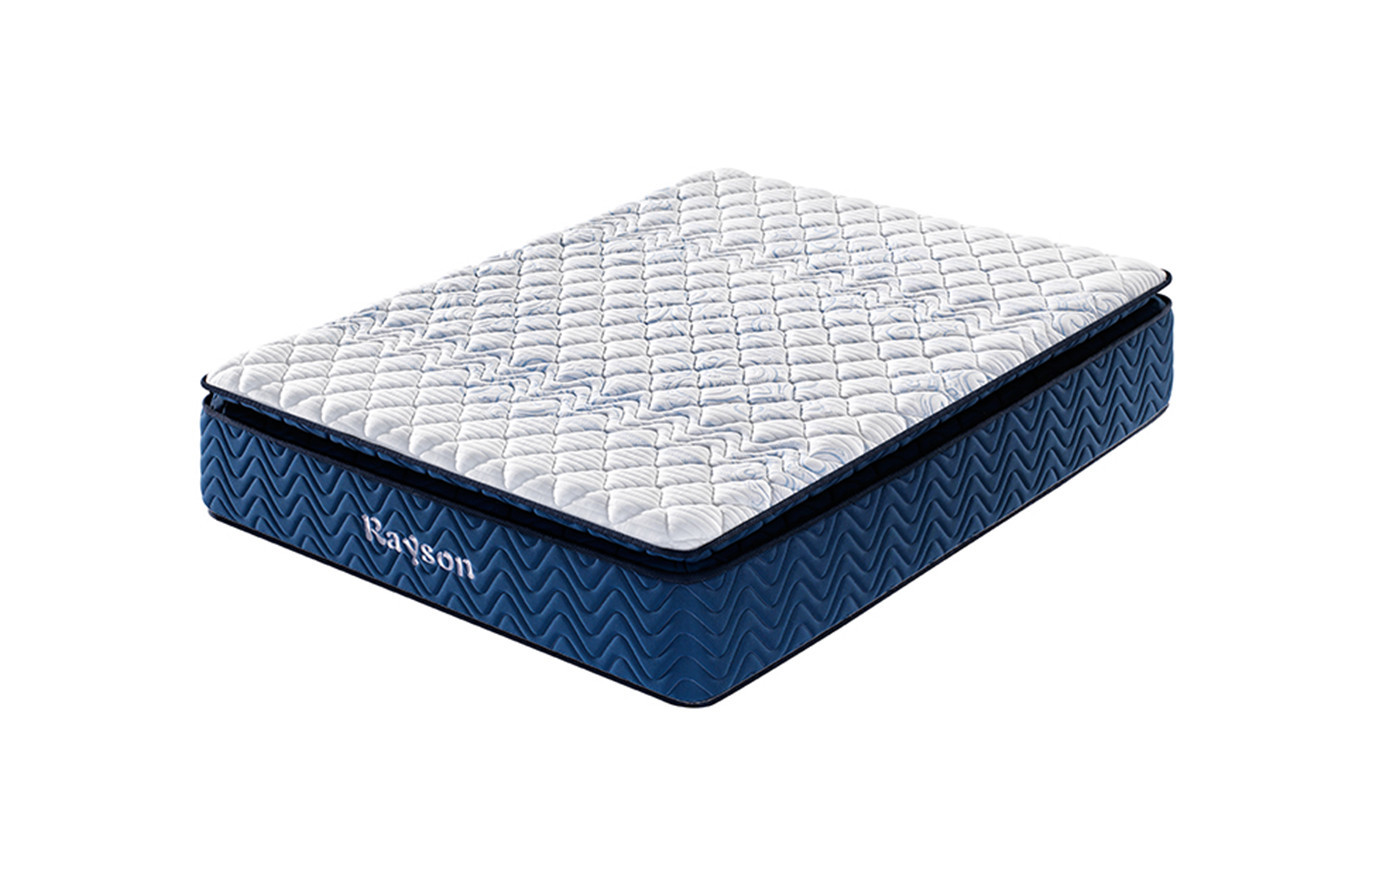 memory foam 5 star hotel mattresses for sale luxury innerspring bulk order